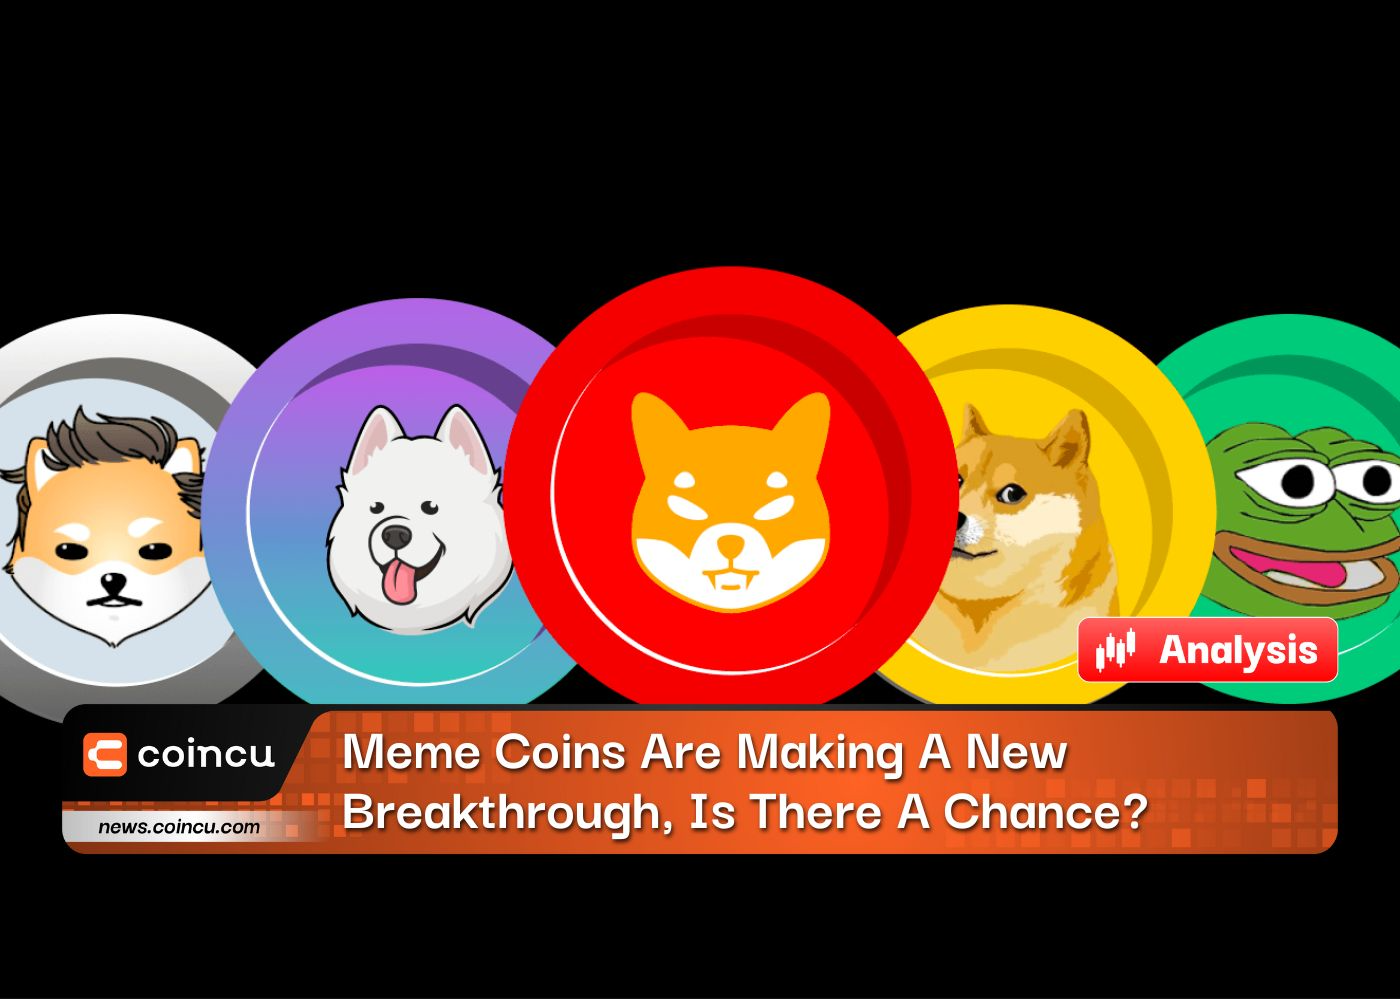 Las monedas Meme están haciendo un nuevo avance, ¿hay alguna posibilidad?